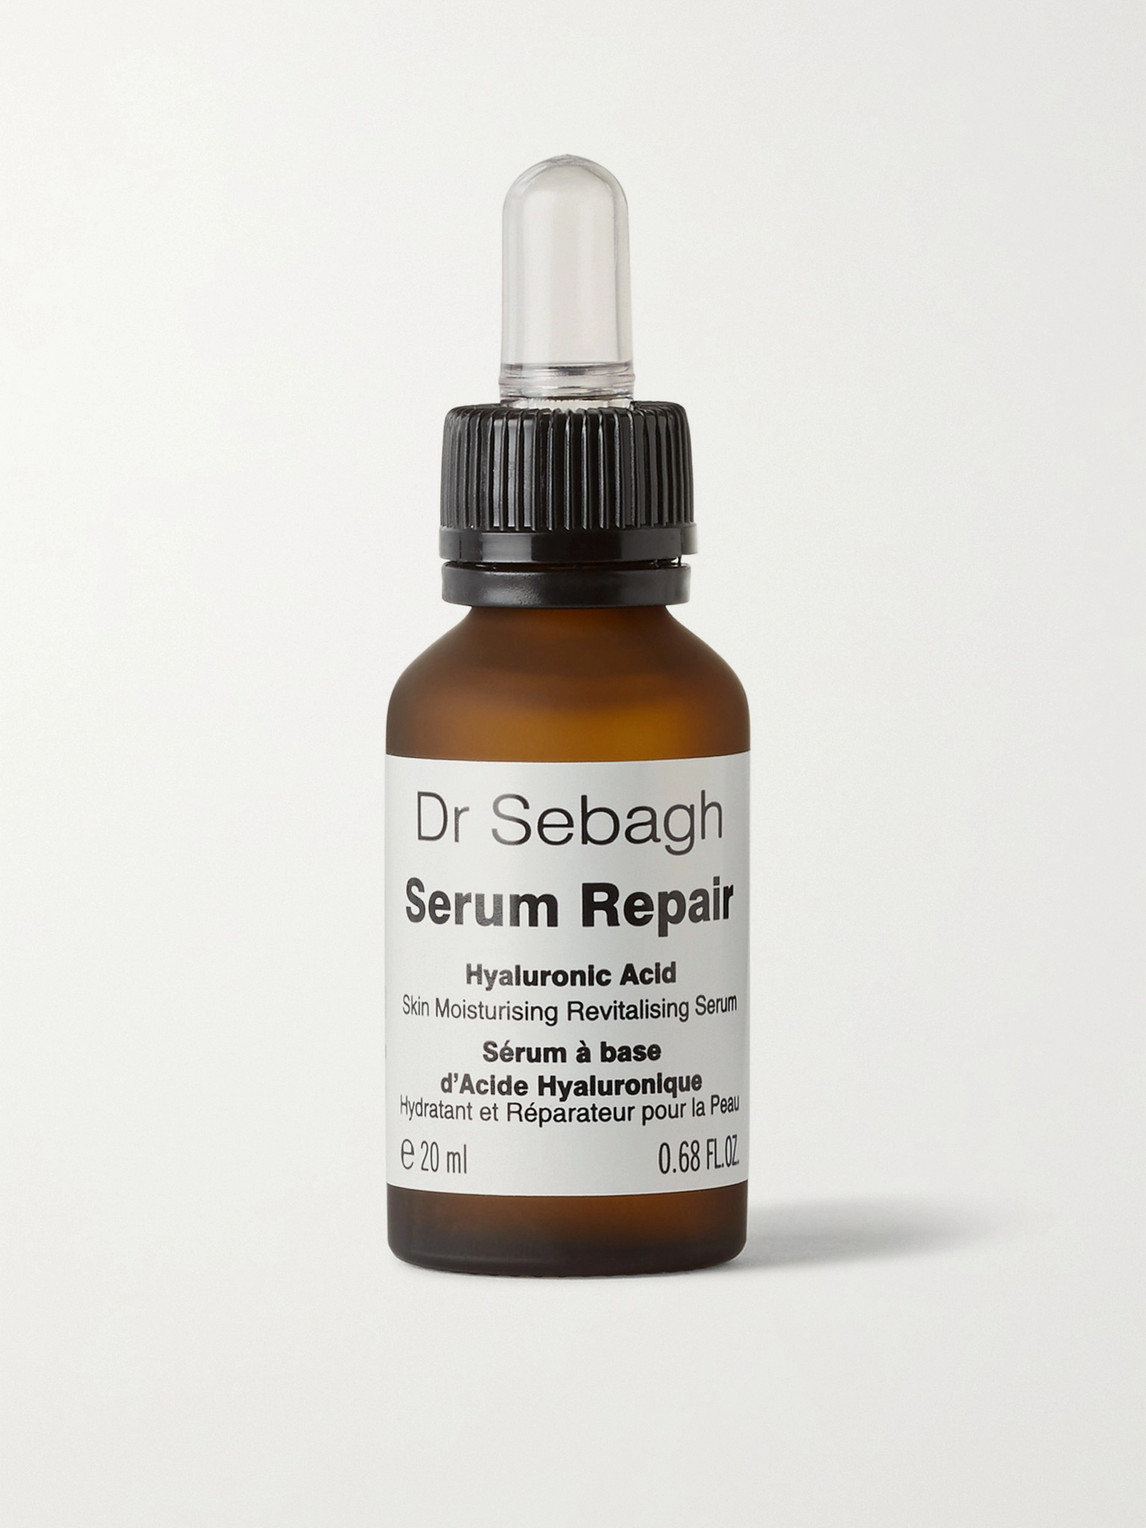 Dr Sebagh Serum Repair, 20ml In Colorless